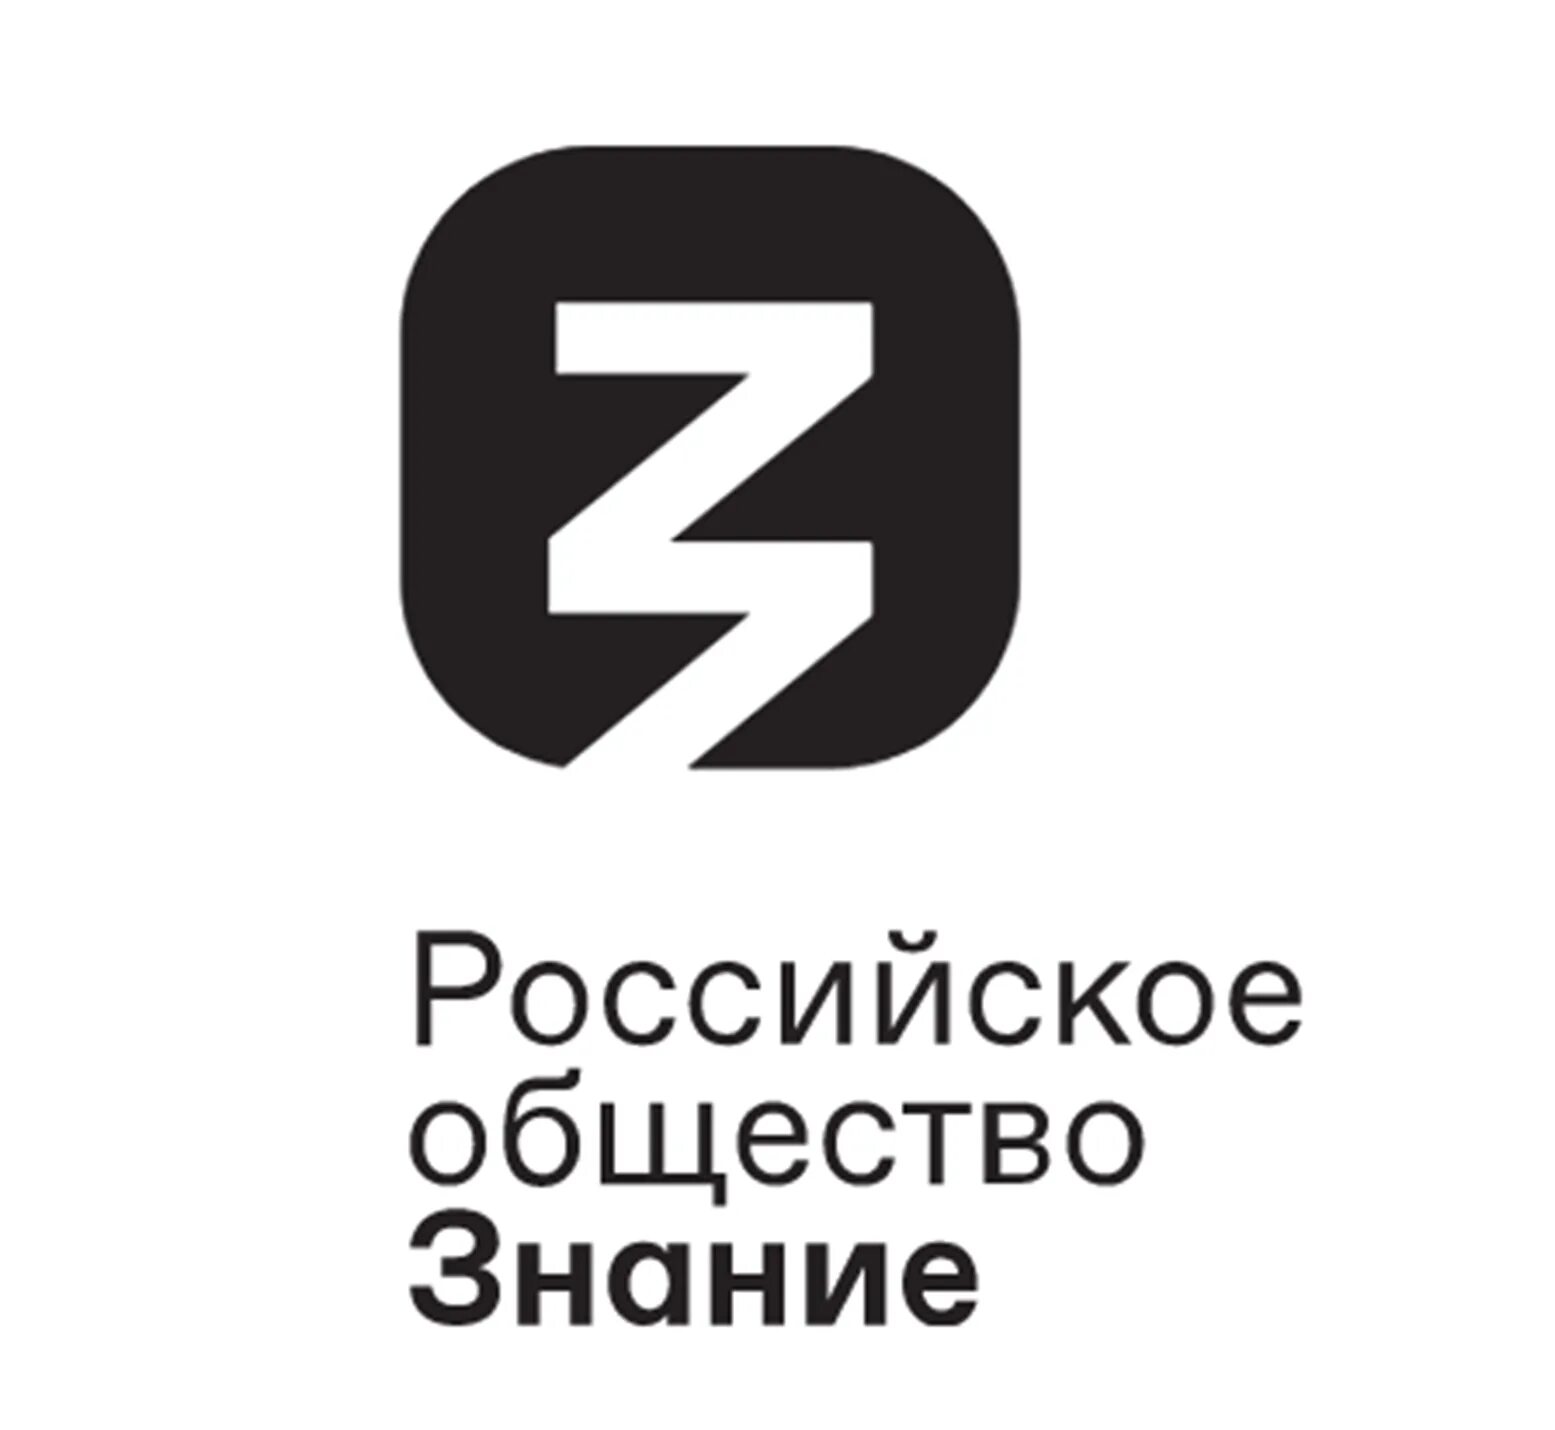 Общество знание логотип. Российское общество знание. Российское общество знание лого. Российское общество Занине лого.